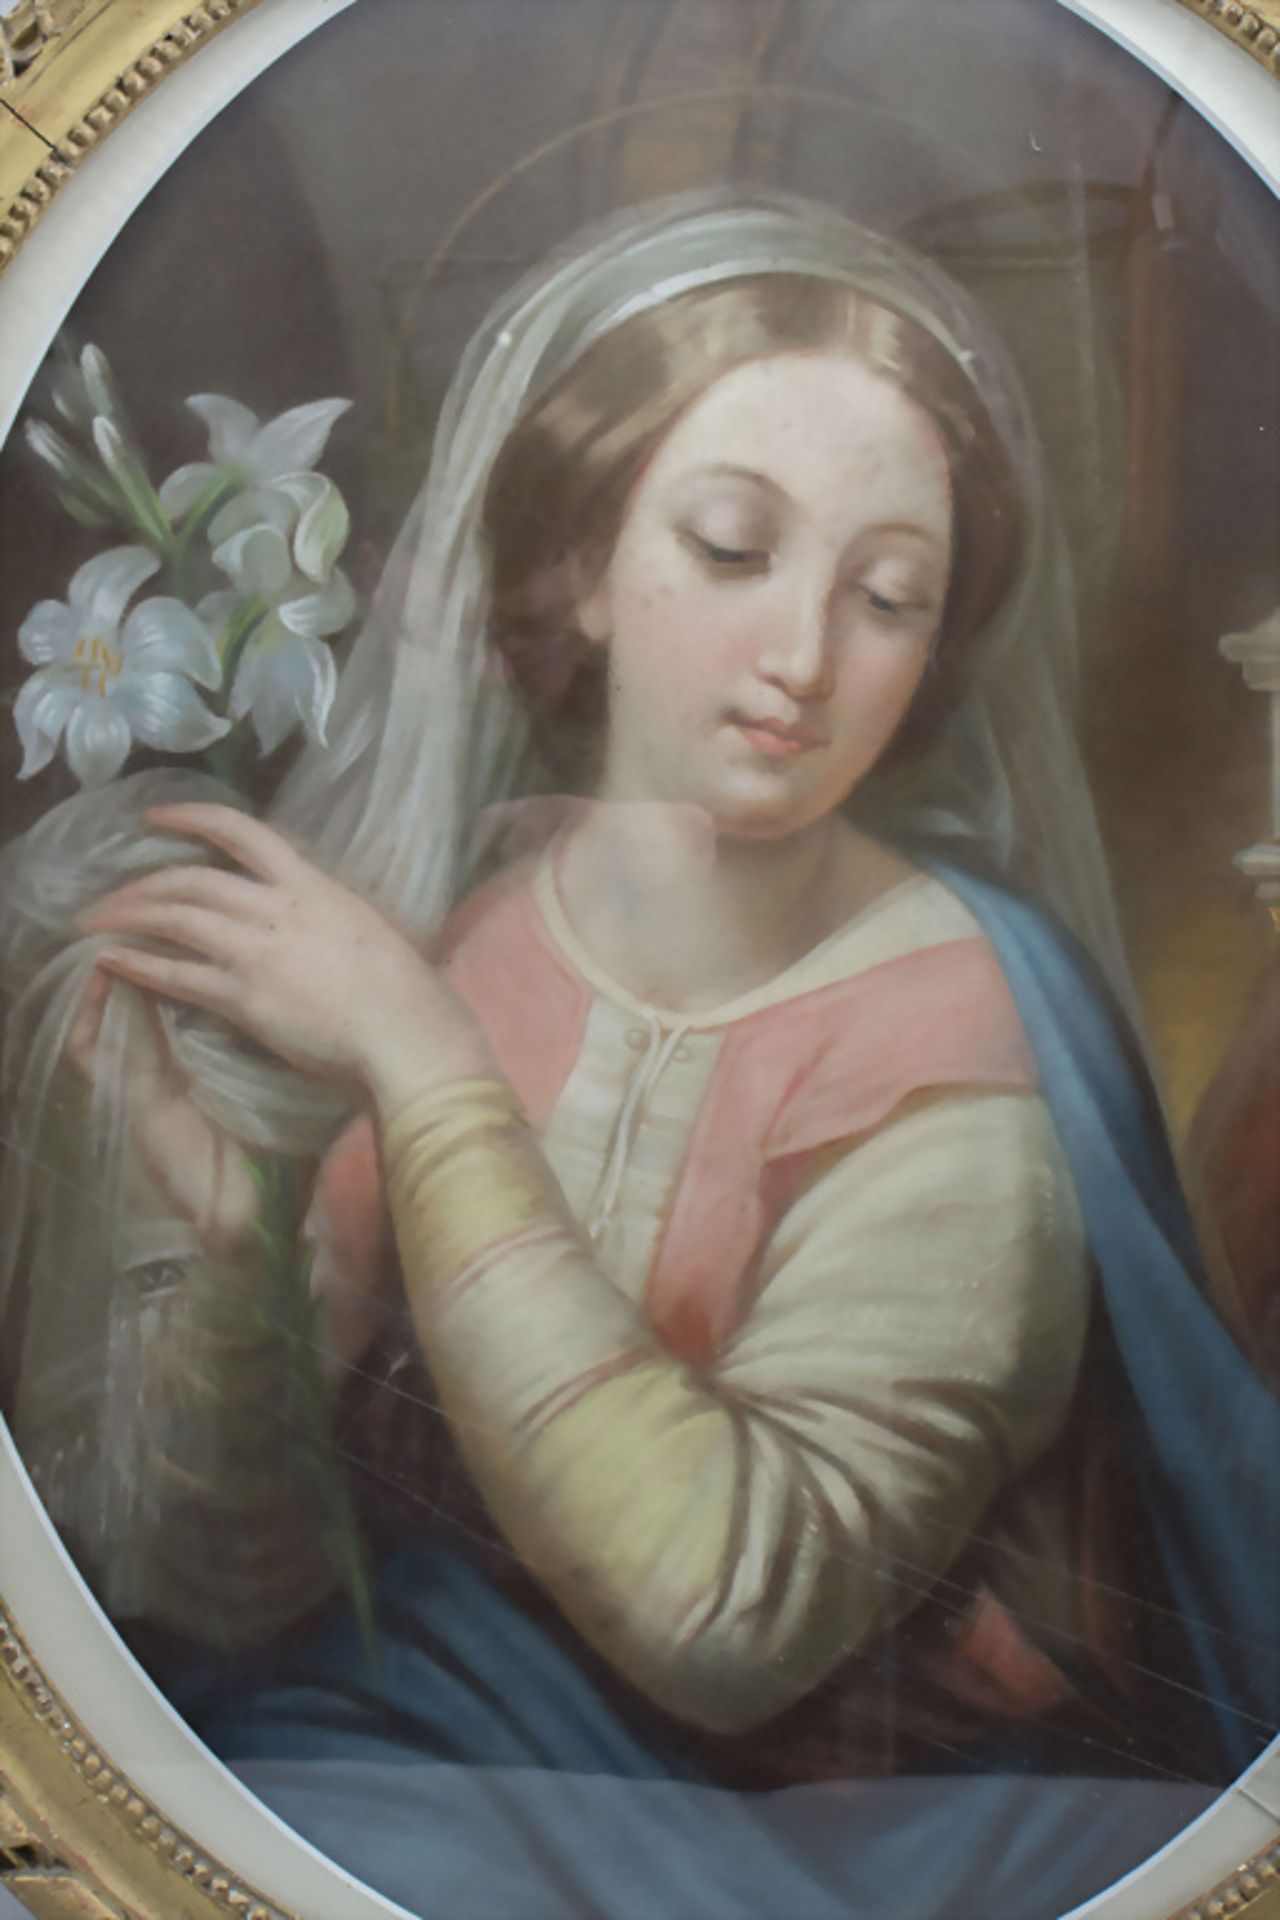 Unbekannter Künstler des 19. Jh., 'Heilige Maria mit Lilie' / 'Holy Mary with a lily', 1859 - Bild 4 aus 6